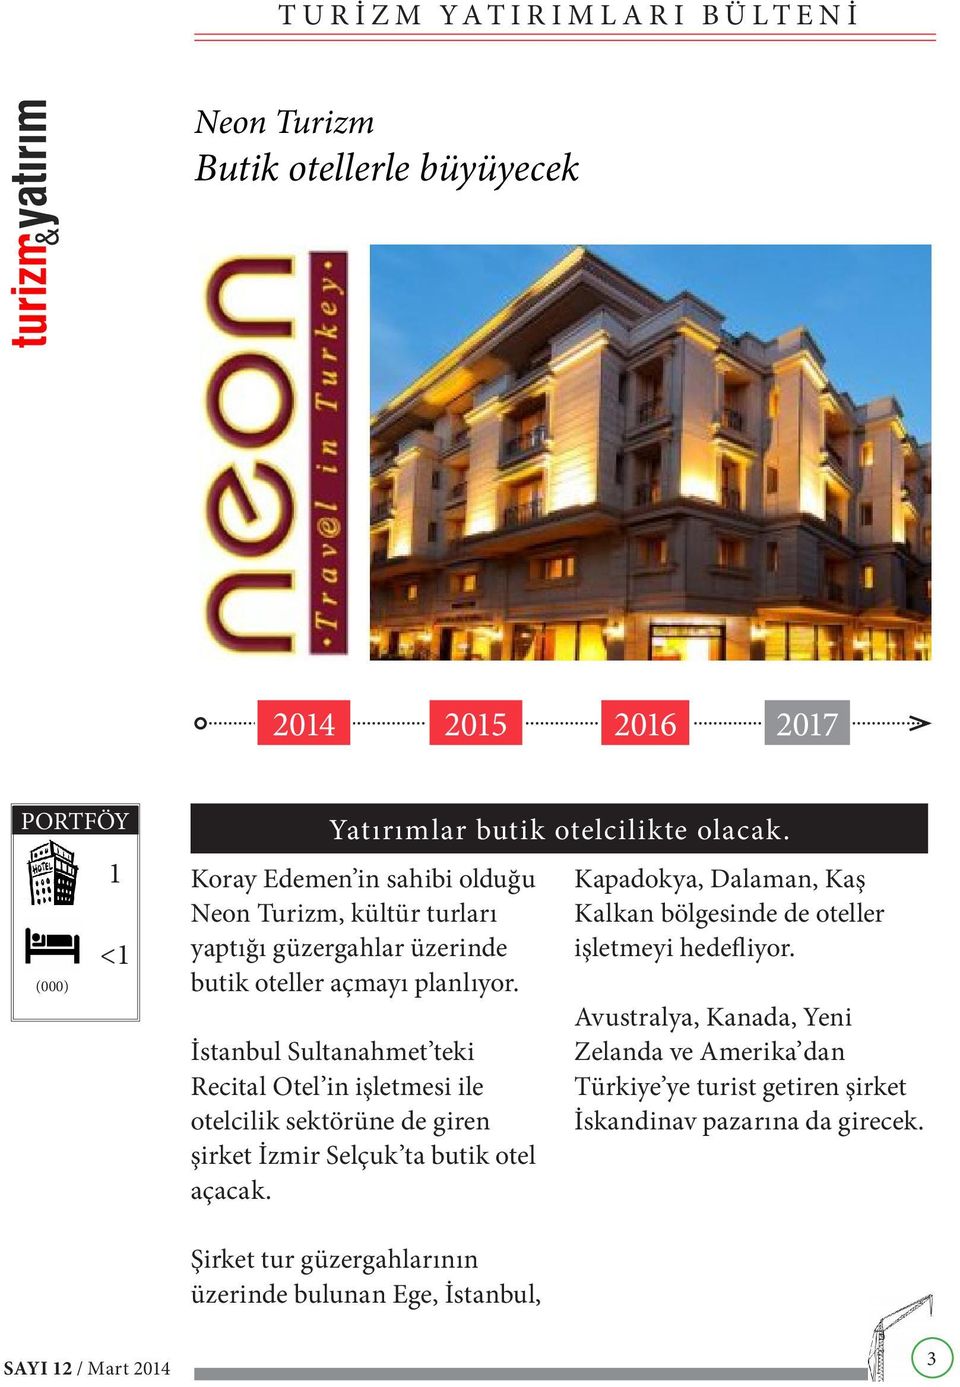 İstanbul Sultanahmet teki Recital Otel in işletmesi ile otelcilik sektörüne de giren şirket İzmir Selçuk ta butik otel açacak.